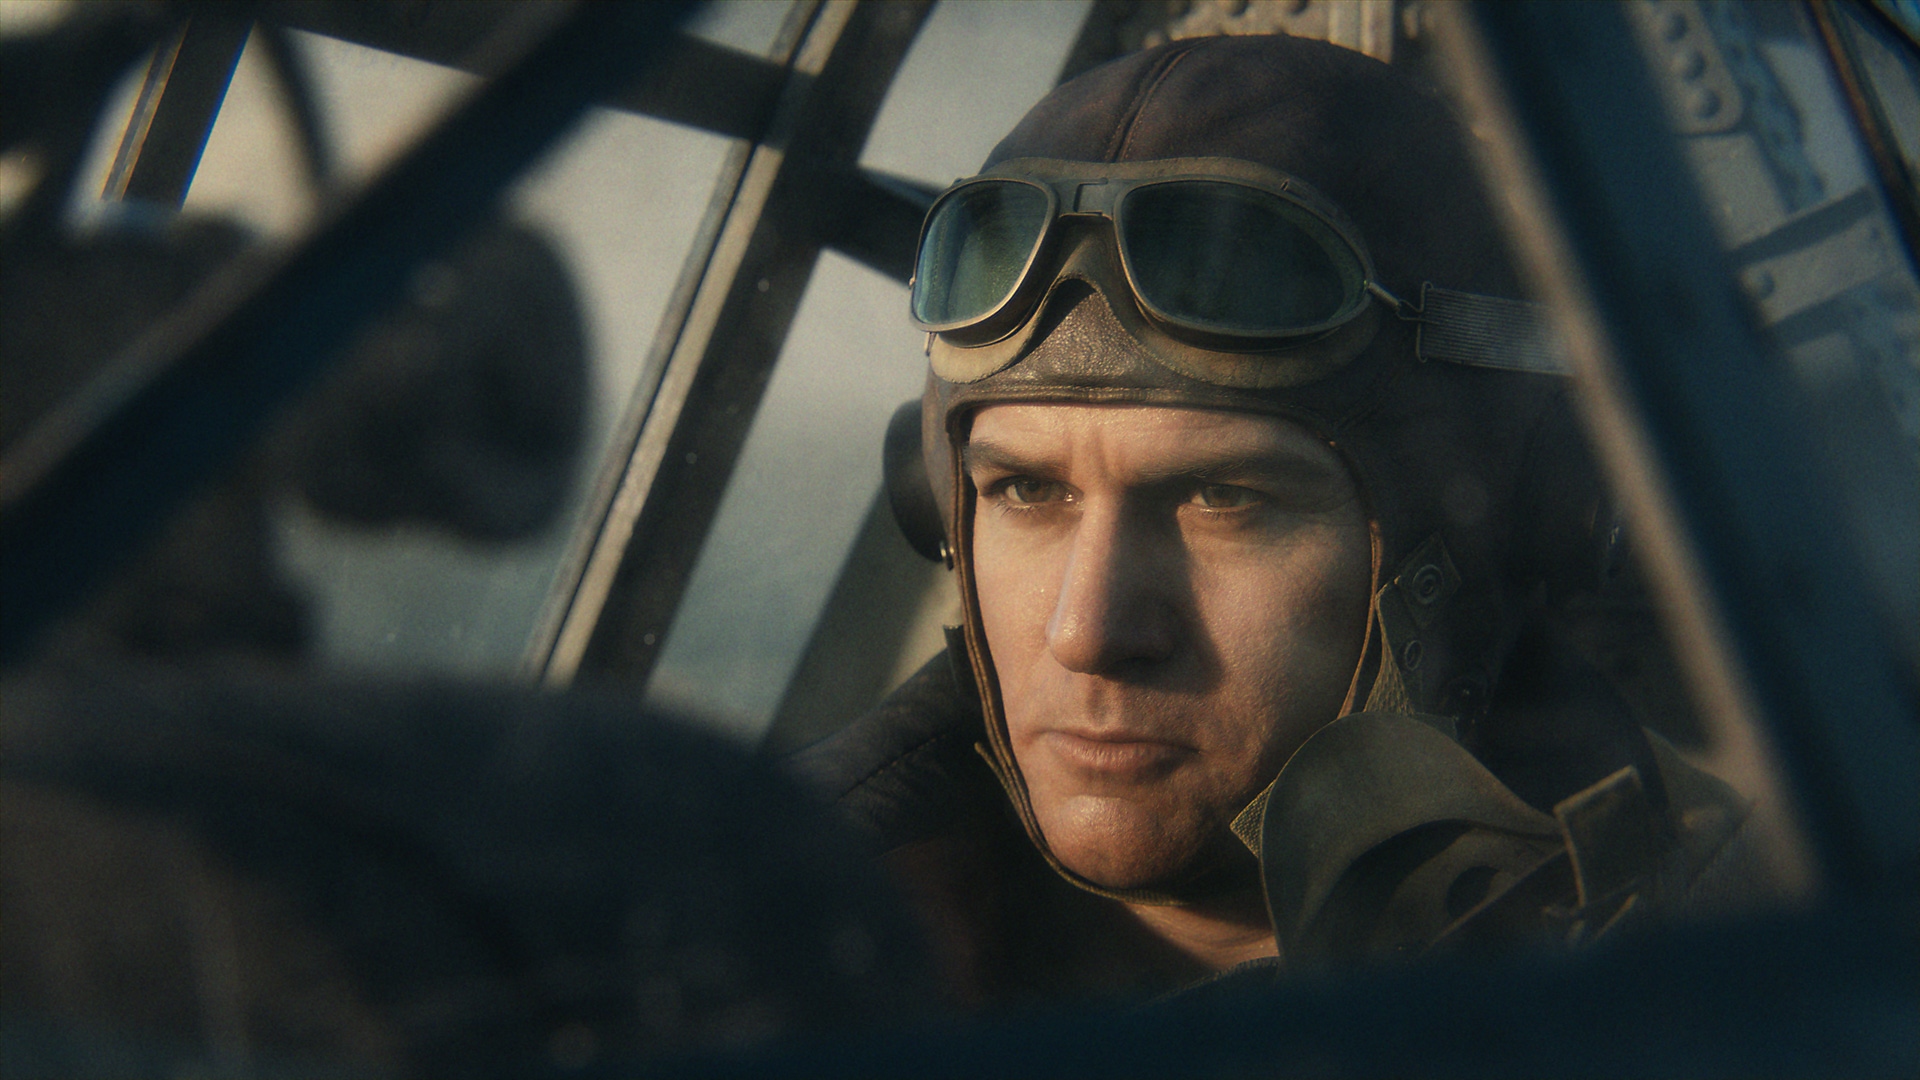 Call of Duty Vanguard – snímek obrazovky zachycující pilota v letadle z 2. světové války